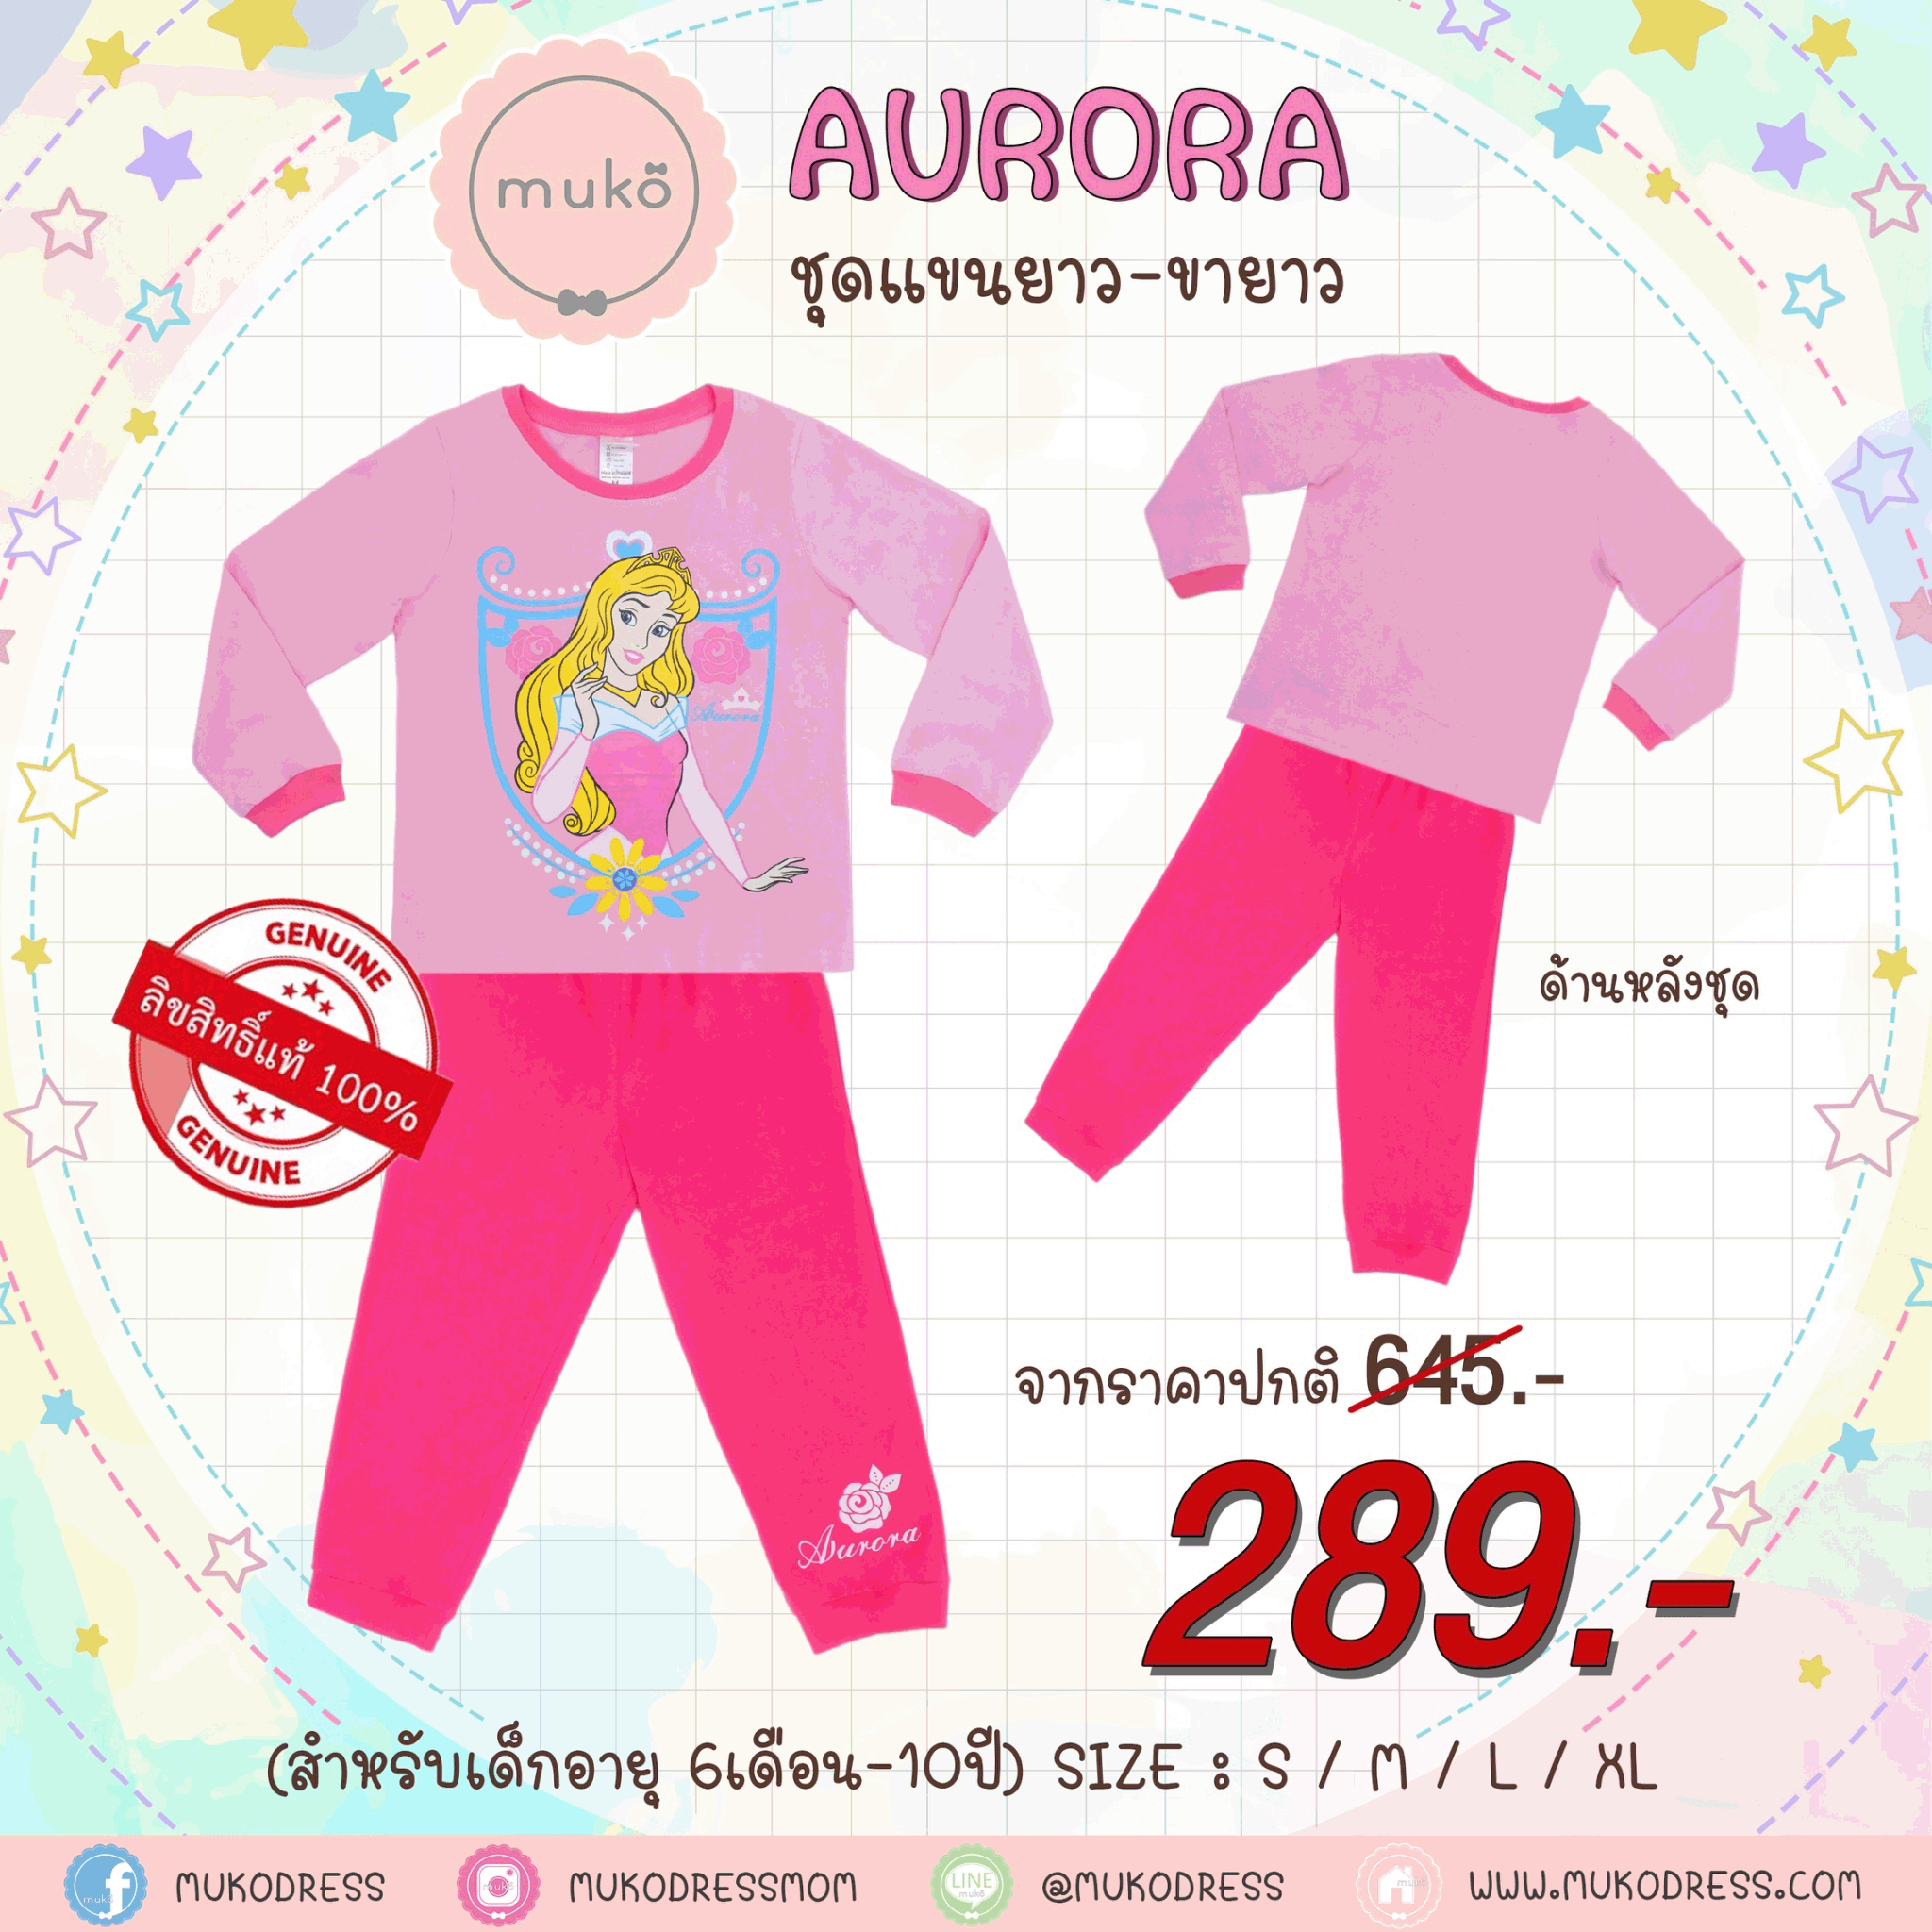 ชุดเด็ก 4-5 ขวบ แขนยาว-ขายาว (Size S) DPC127-12-XL-Light Pink S ลาย เจ้าหญิงออโรร่า Aurora สีชมพูอ่อน (ชมพูอ่อน)